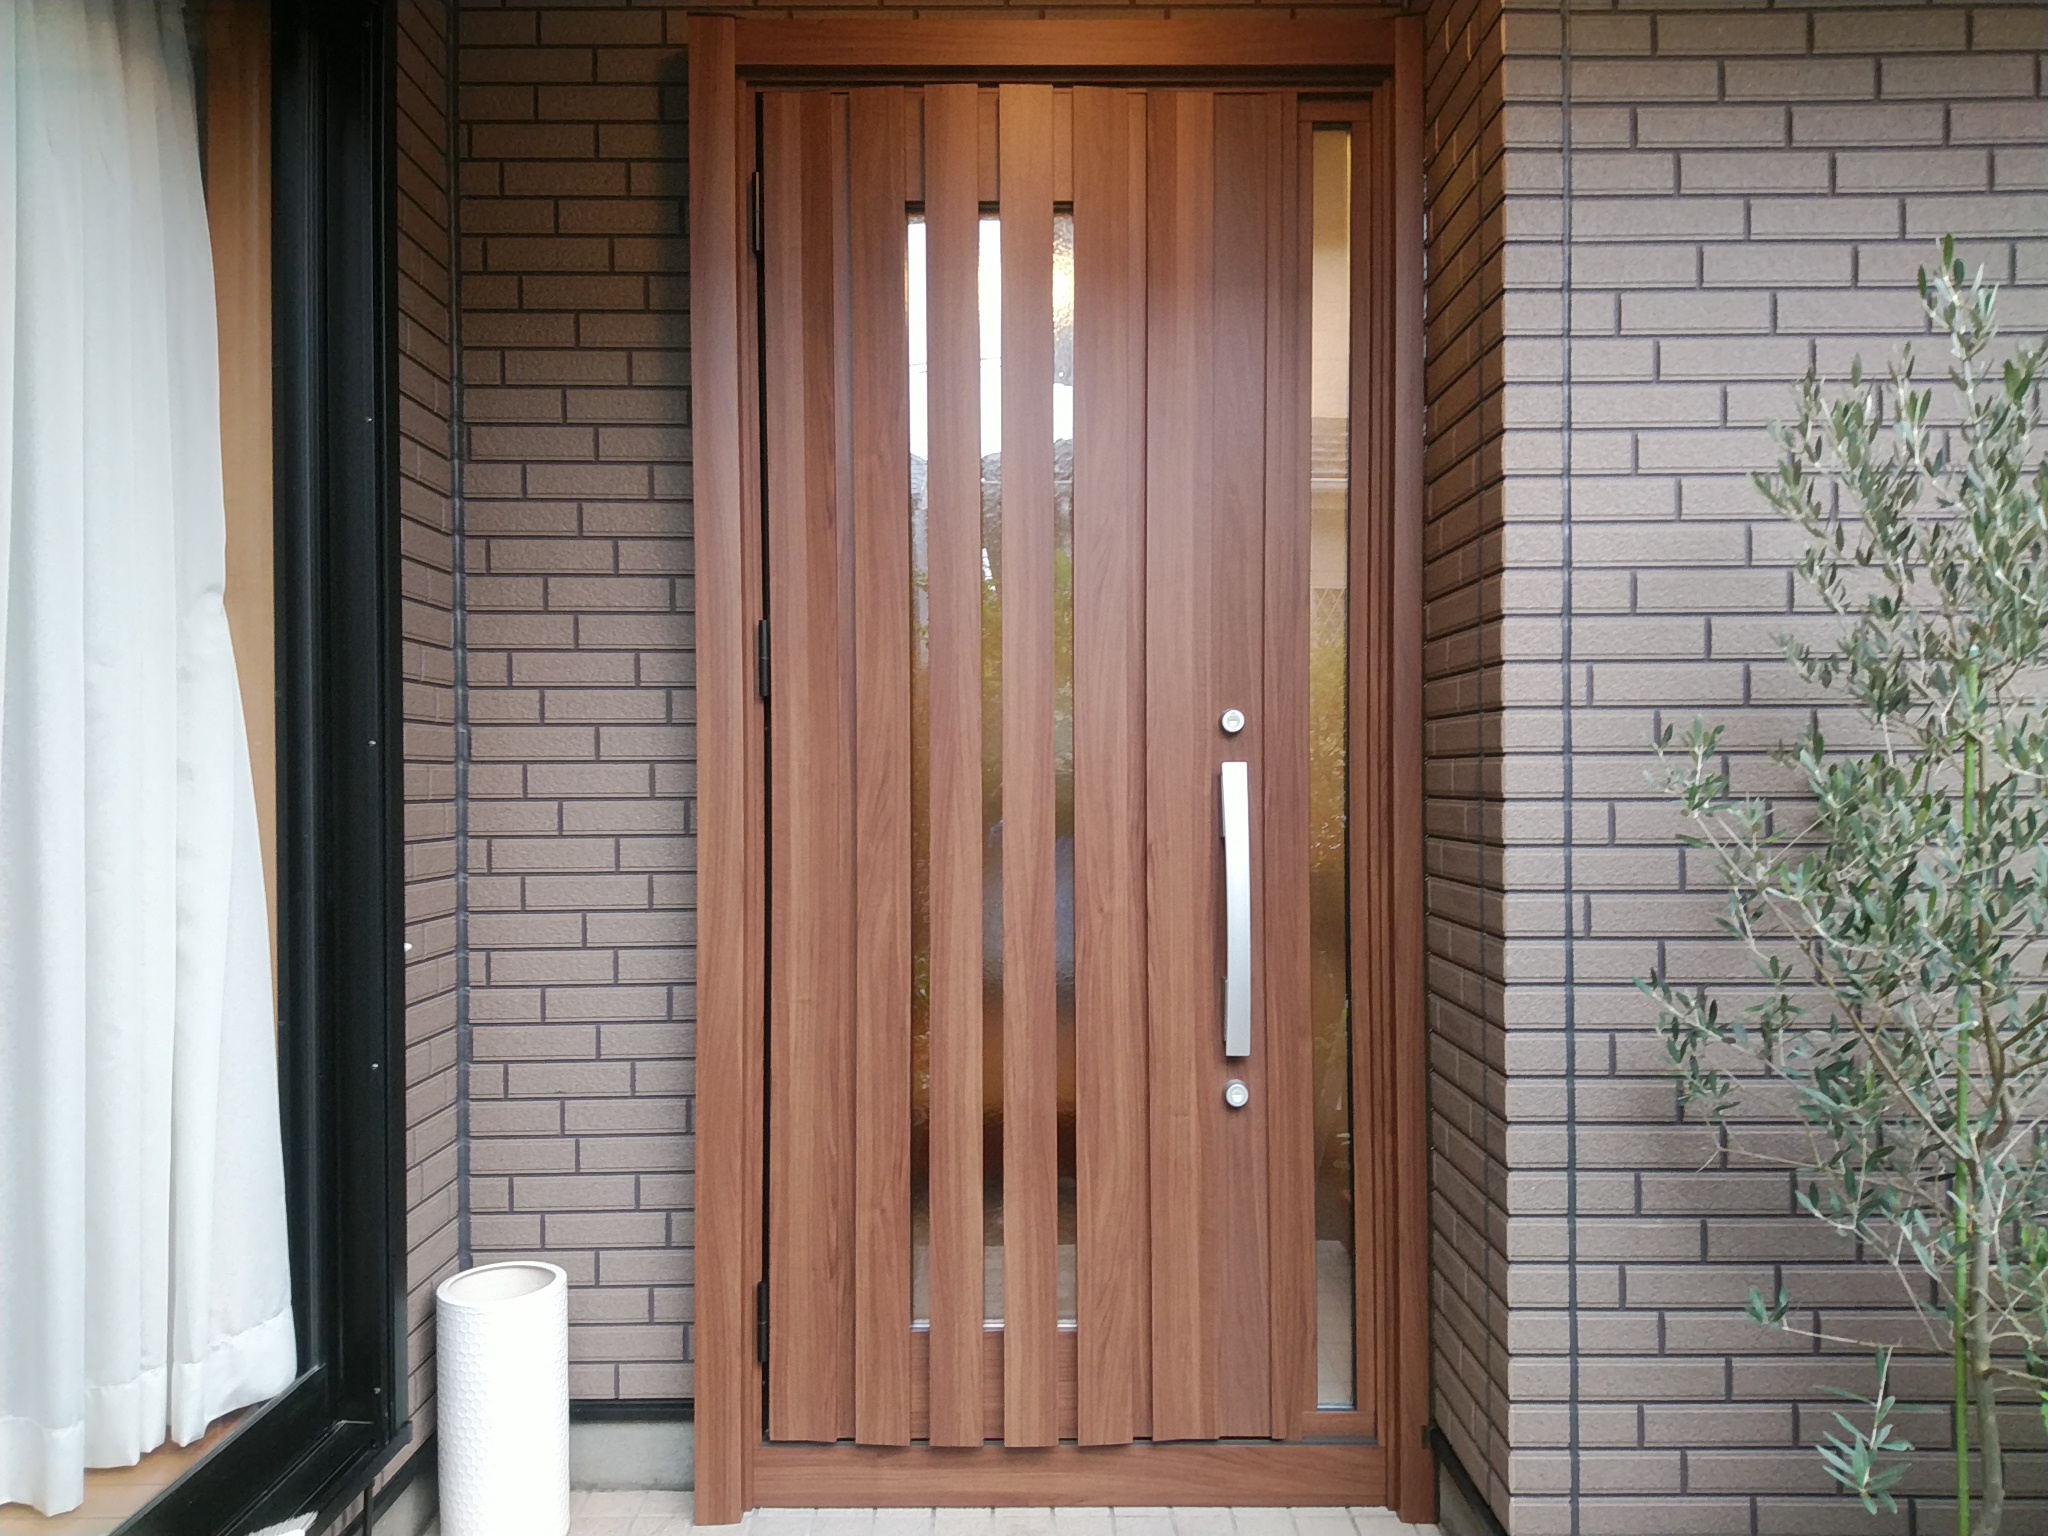 木目調のドアにすると暖かみのある高級感が出ます Lixilリシェントg14型 玄関ドアのリフォームなら玄関ドアマイスターへお任せください